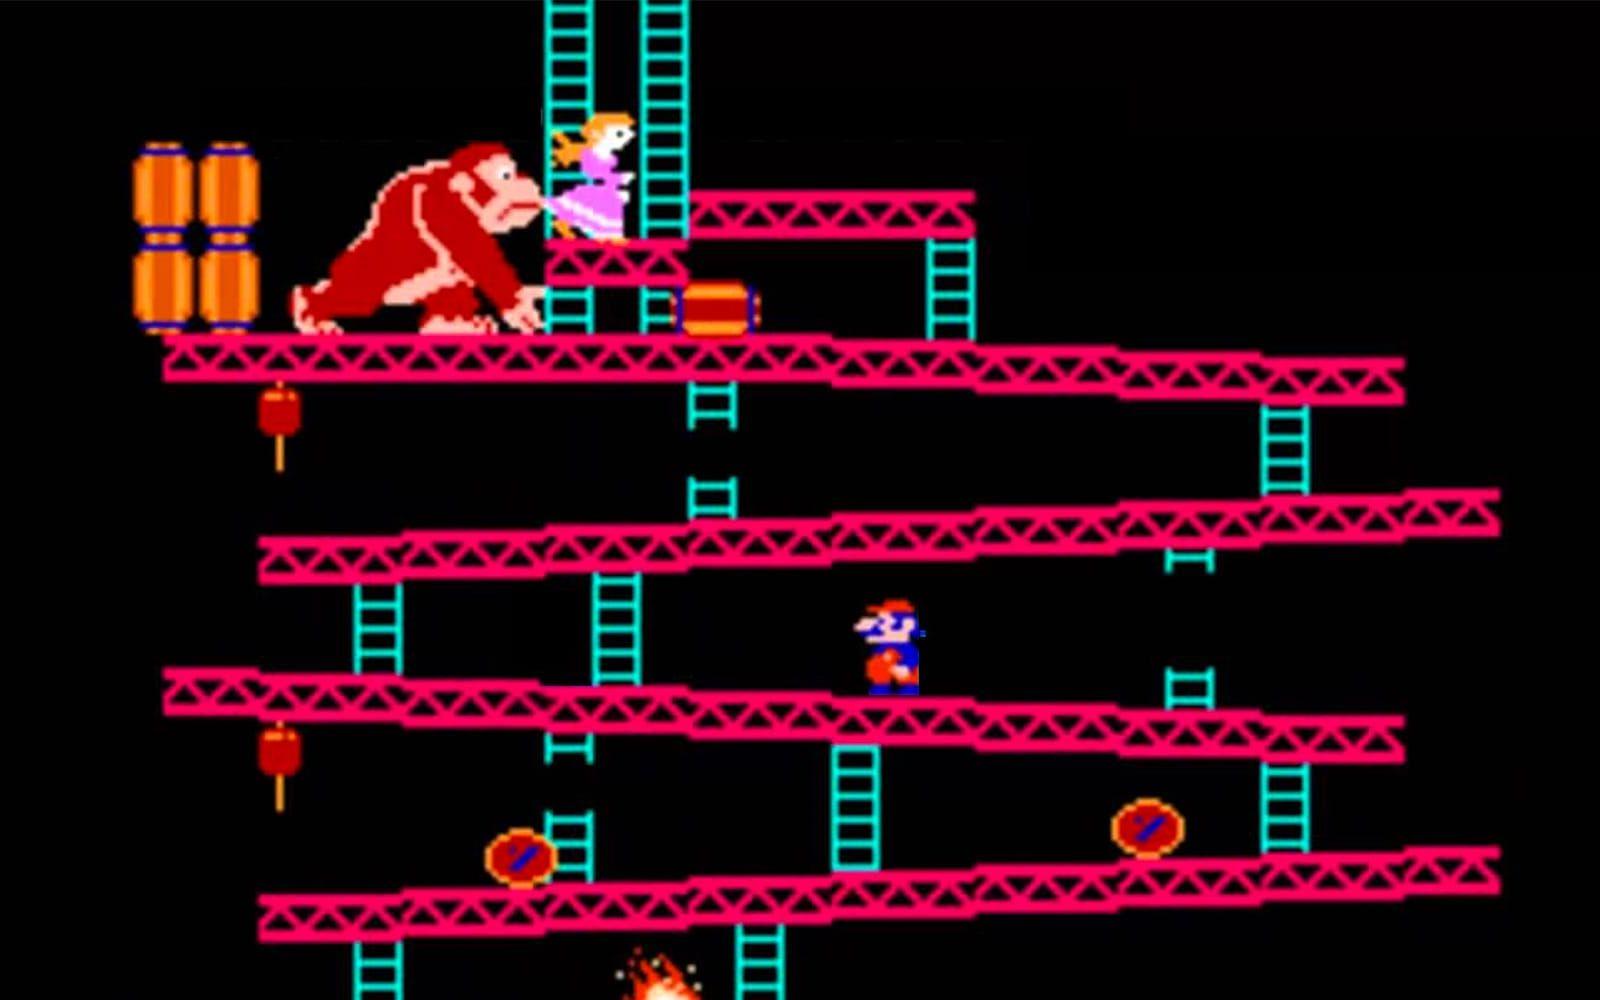 Donkey Kong för arkadspelmaskiner släpptes 1981. Den mustaschprydde hjälten som skulle rädda prinsessan undan Donkey Kong kallades rätt och slätt Jumpman. Namnet Mario fick han först när han gjorde entré i hemmen. Spelet släpptes på Nintendos första spelkonsol , oftast kallad NES, 1983 i Japan.